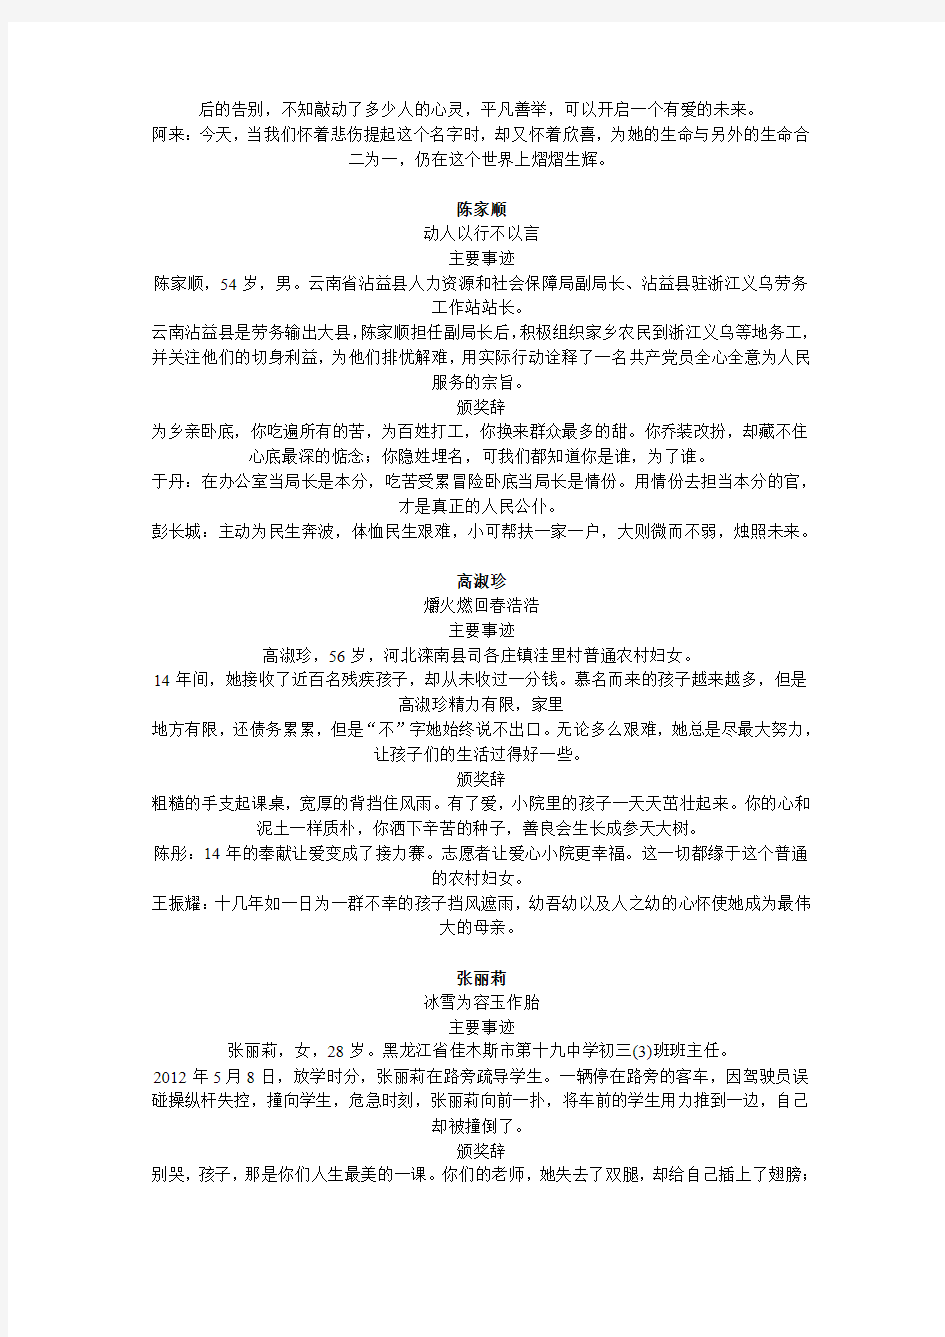 2012年度感动中国人物文字资料(依据cctv-1  2013年正月初十节目整理)